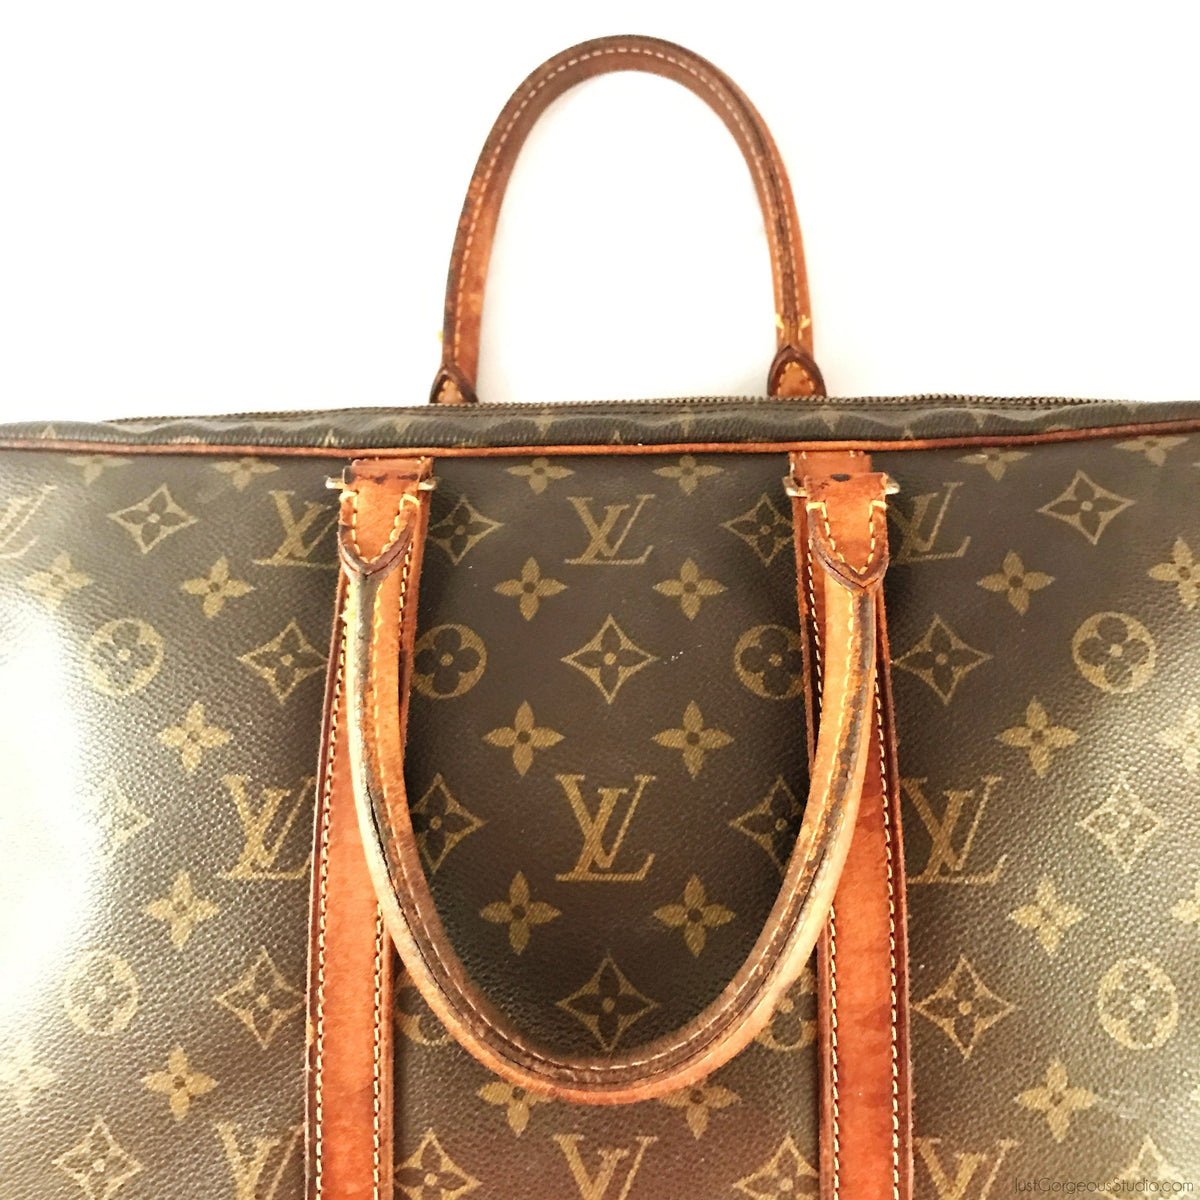 Louis Vuitton, Bags, Authentic Lv Louis Vuitton Monogram Pm Agenda W Dust  Bag Box